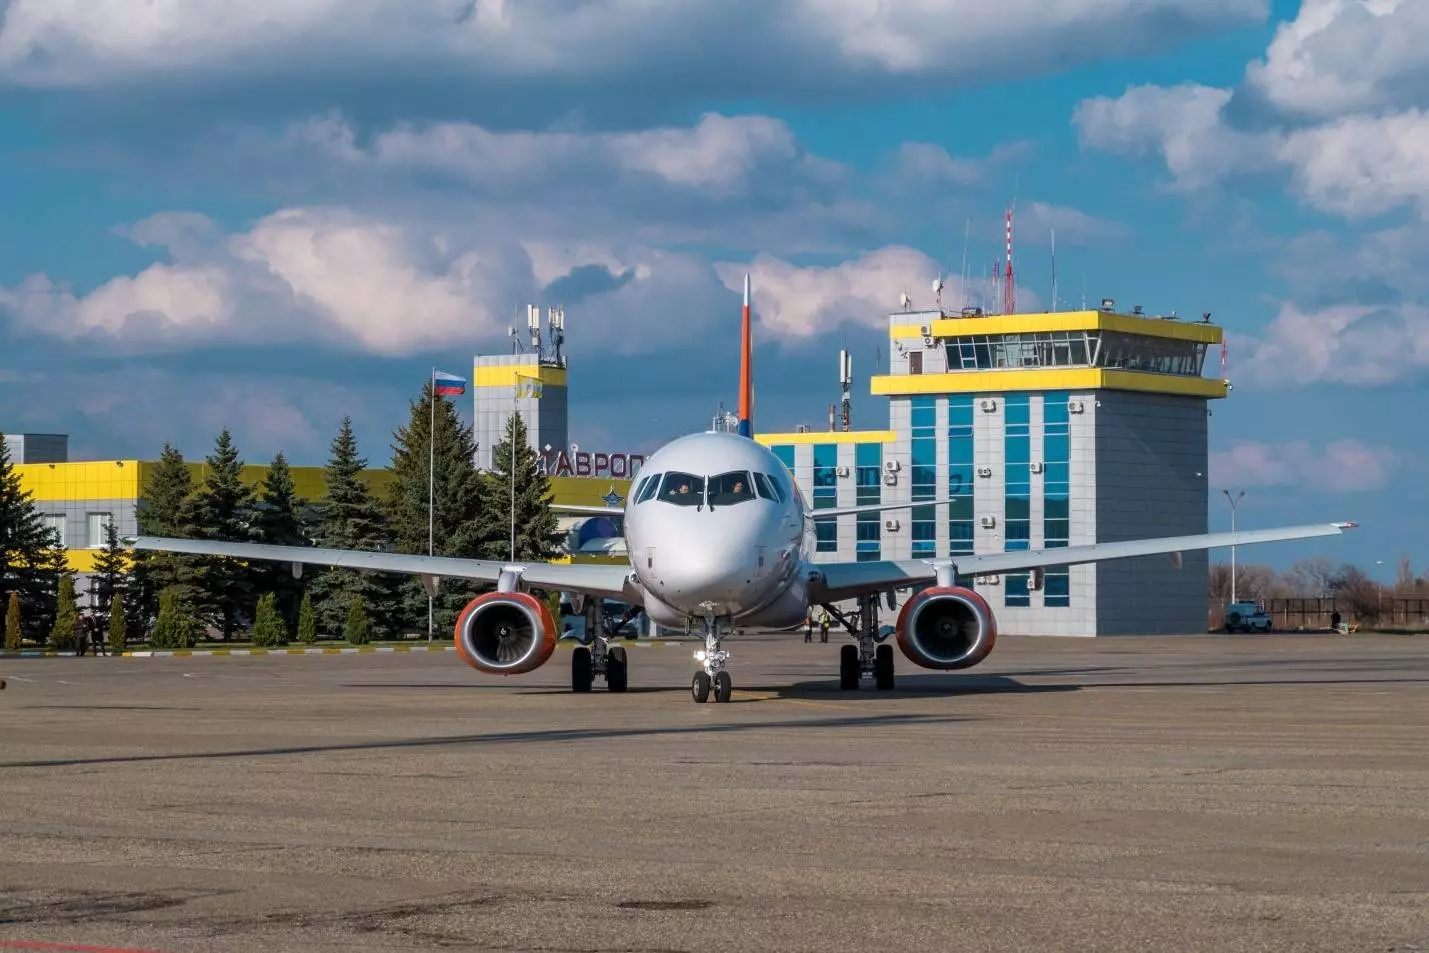 Основные данные, описание и фото международного аэропорта ставрополя. как добраться до шпаковского?